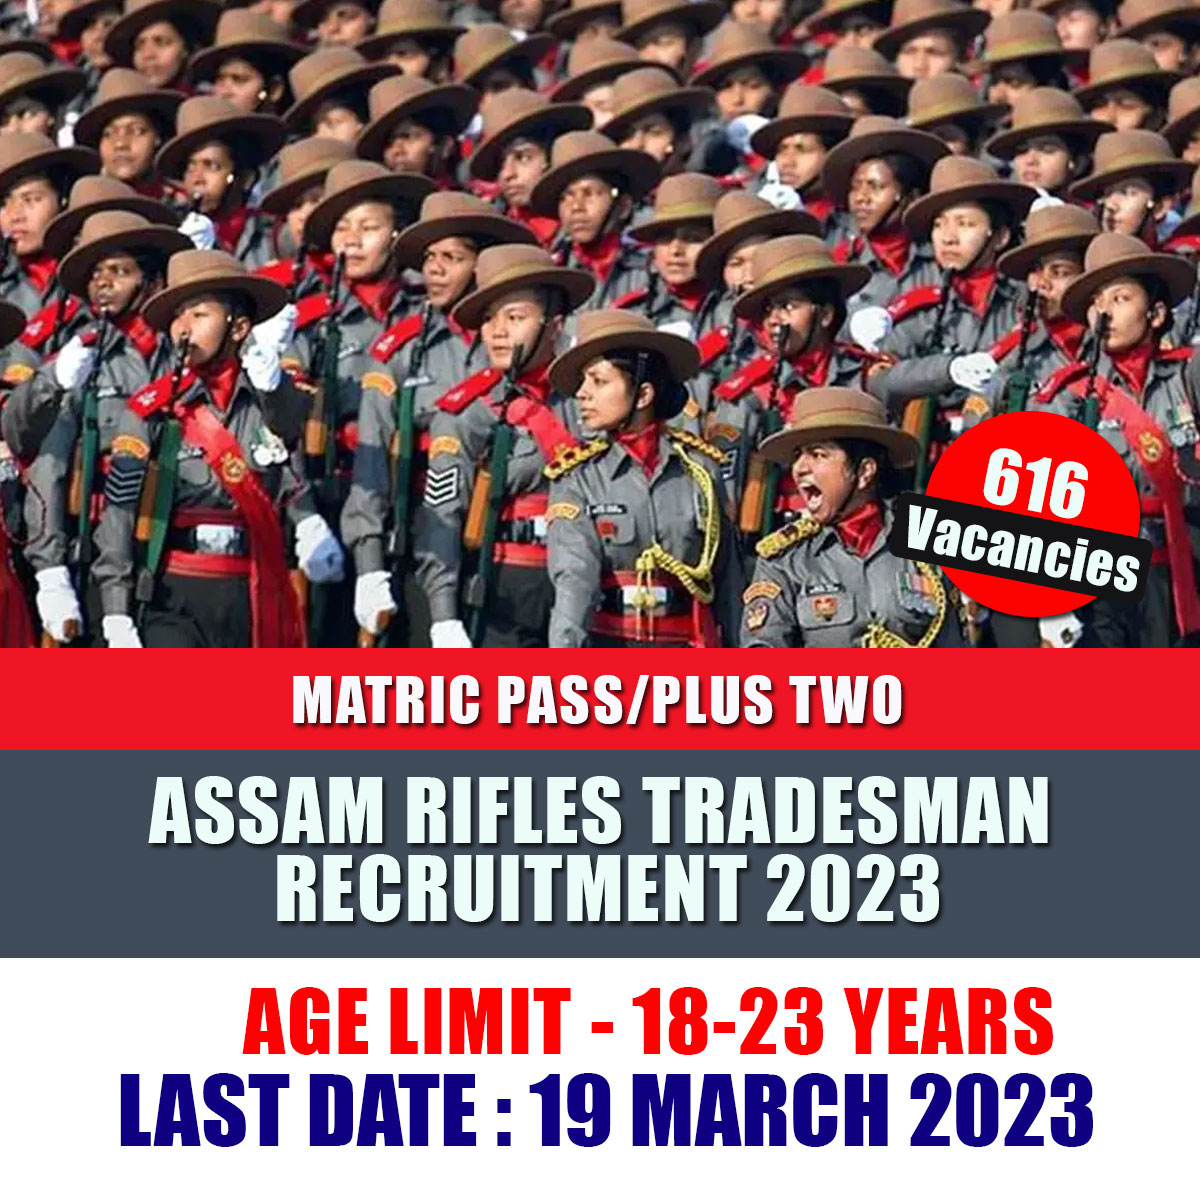 Assam Rifles Tradesman Recruitment 2023